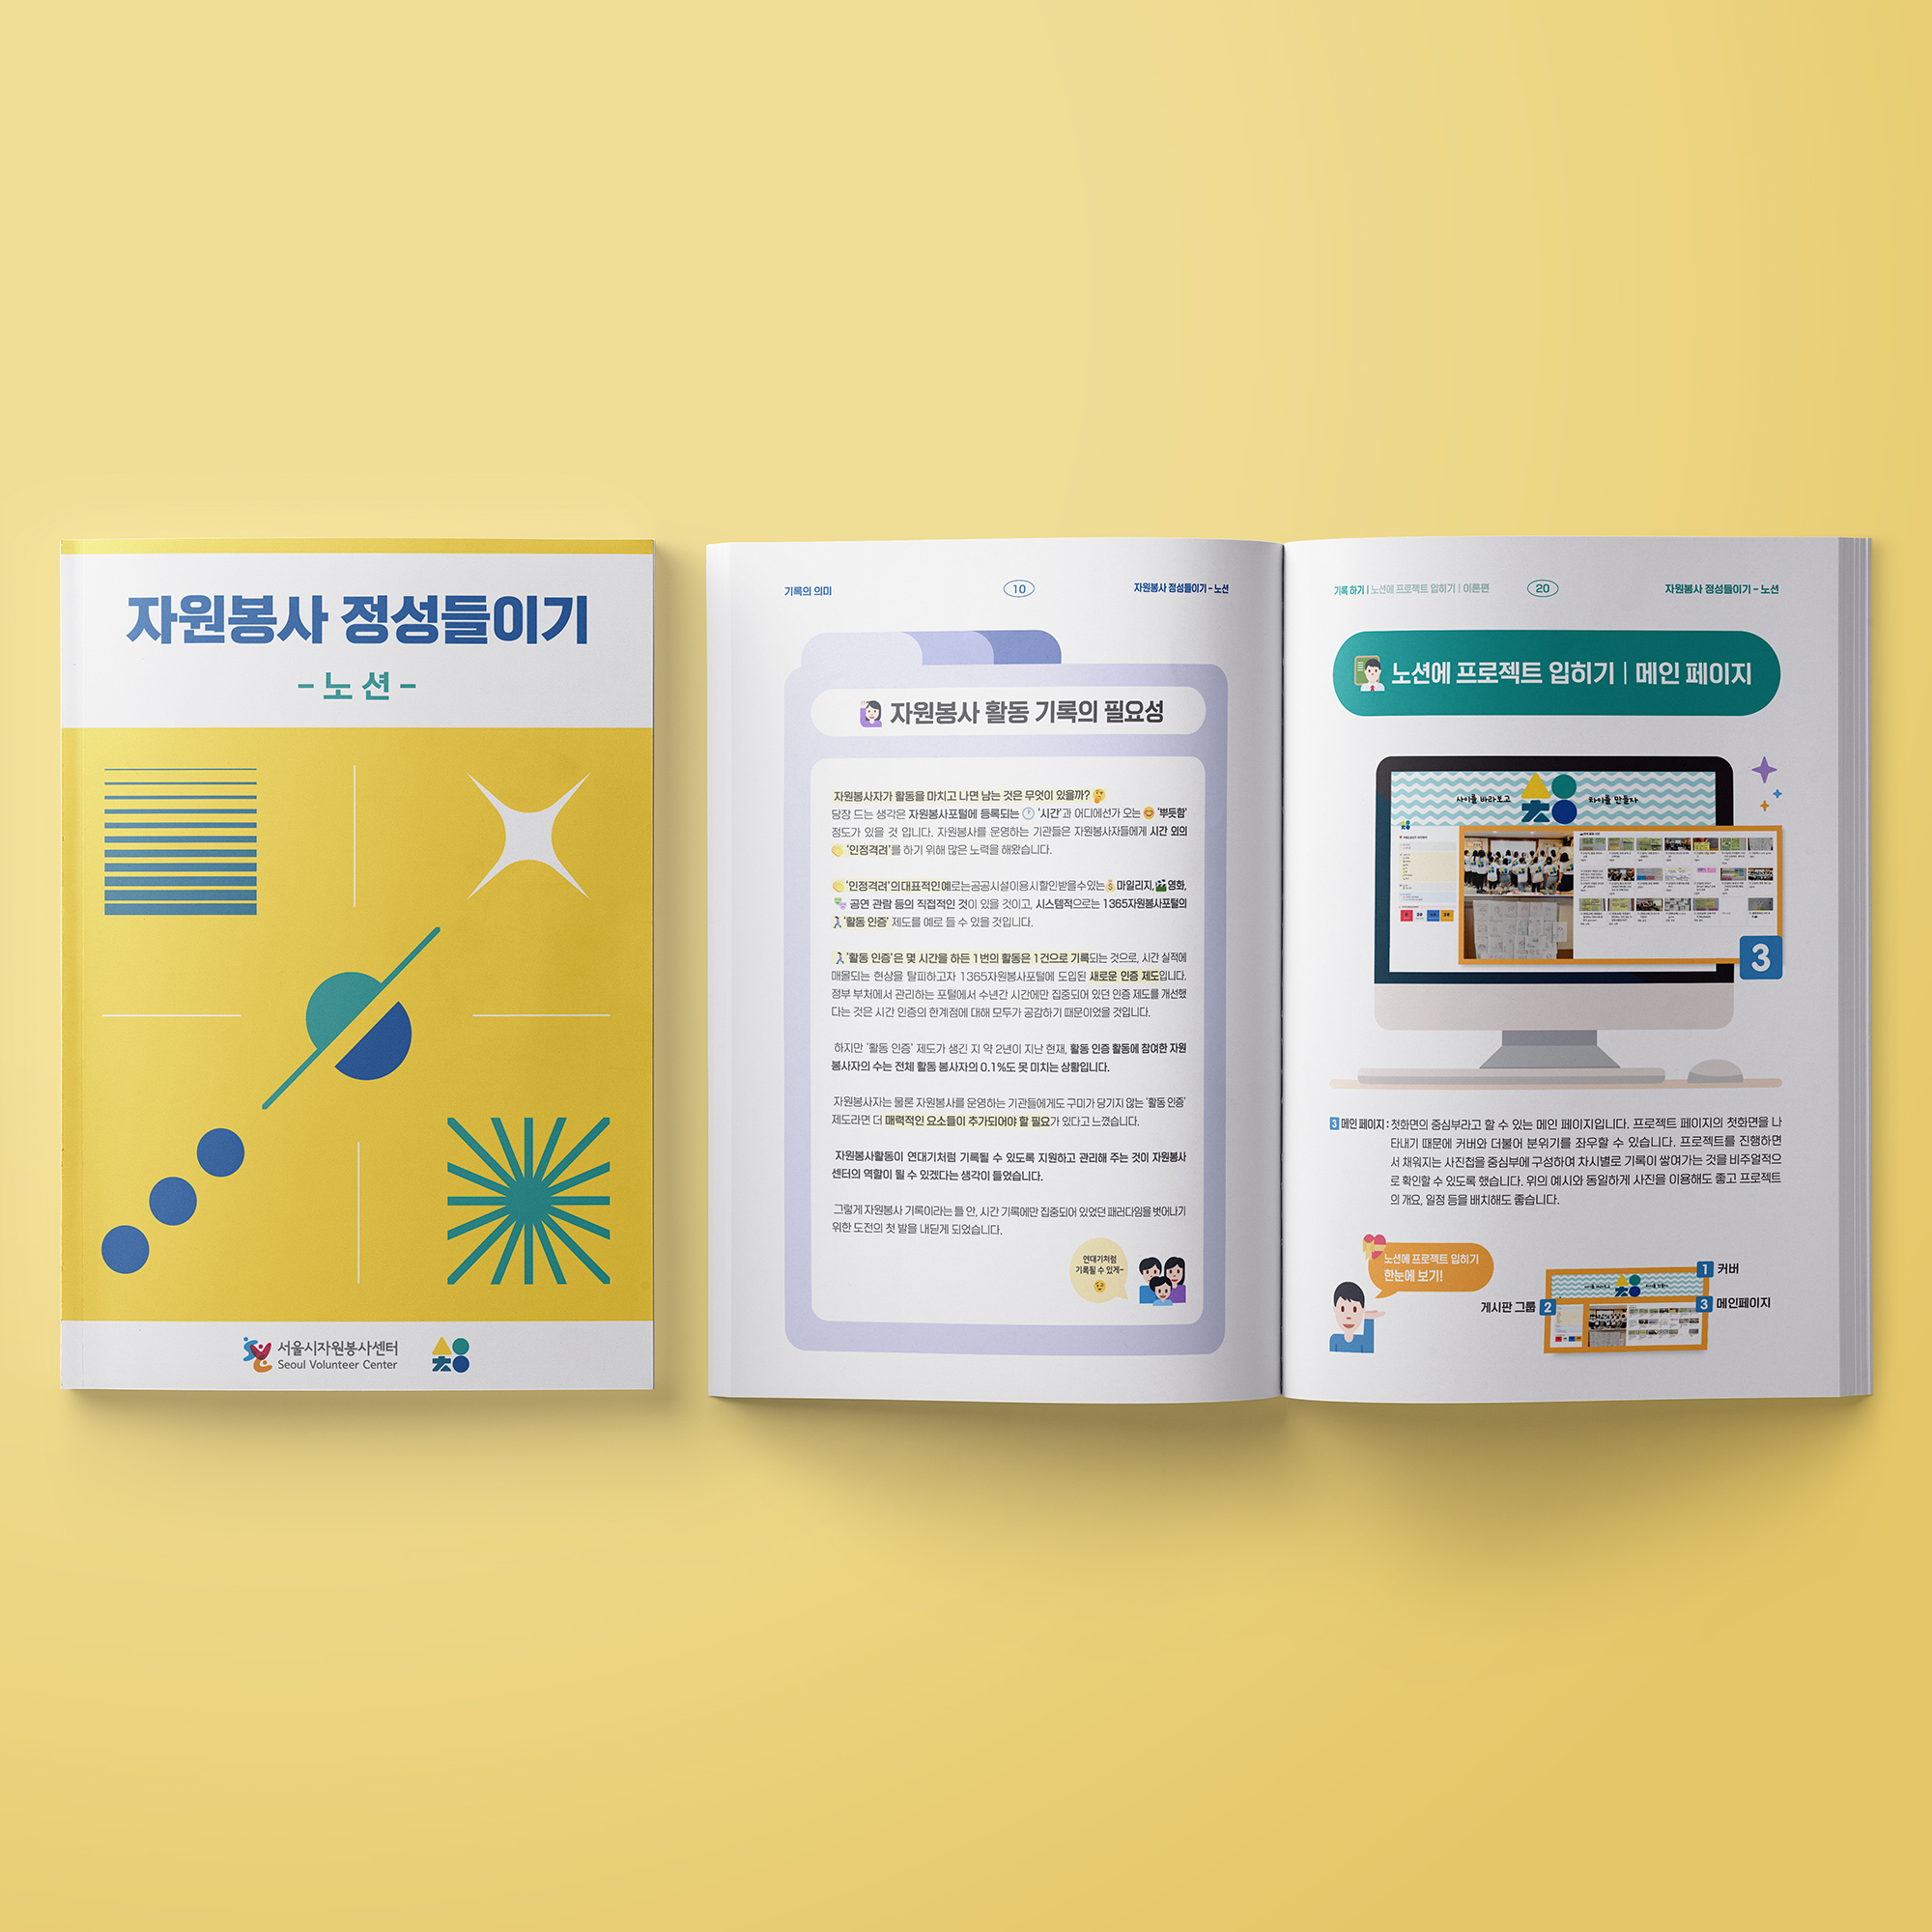 서울시자원봉사센터 노션 카탈로그 책자 디자인 제작